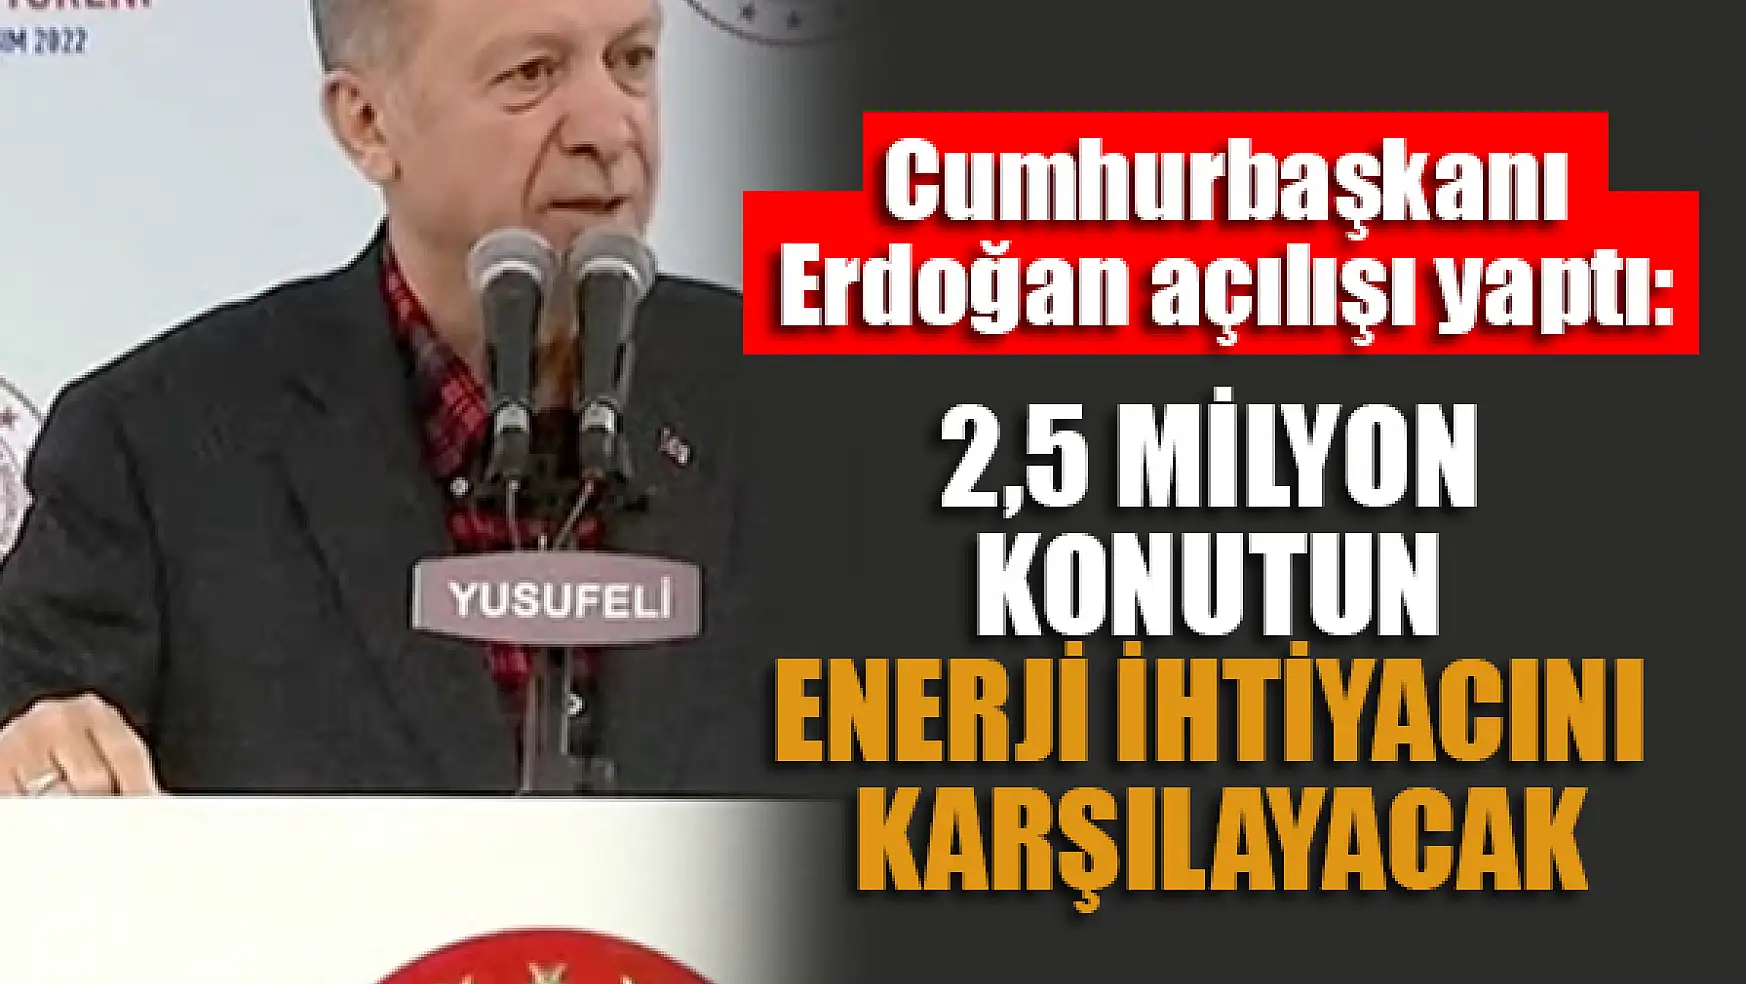 Cumhurbaşkanı Erdoğan açılışı yaptı: 2,5 milyon konutun enerji ihtiyacını karşılayacak